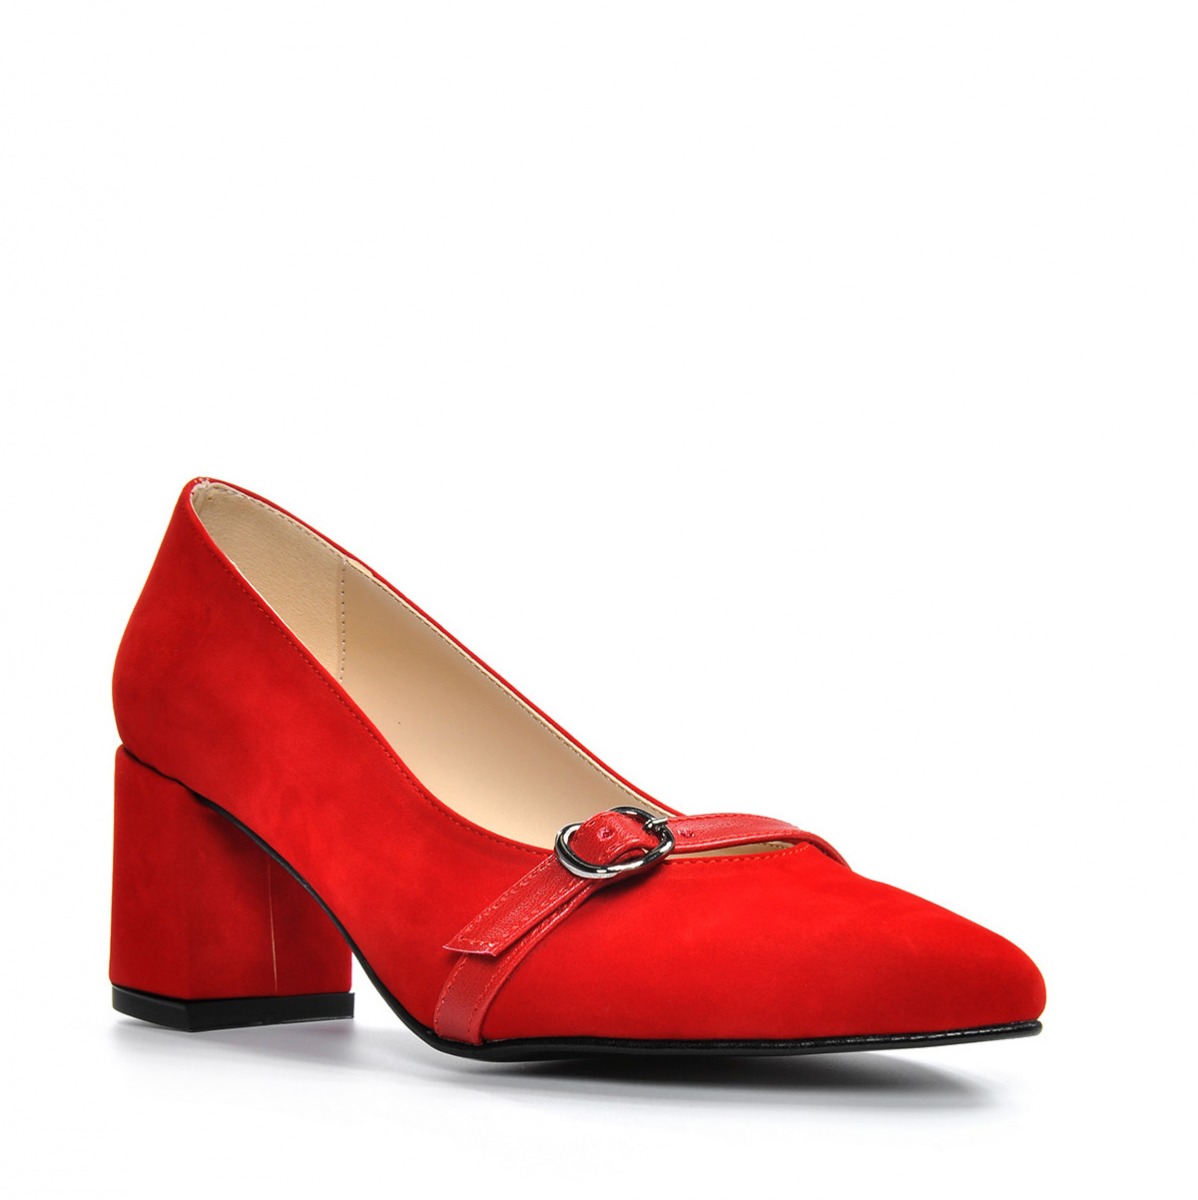 Flo Kadın  Kırmızı-Süet Klasik Topuklu Ayakkabı VZN19-110K. 4